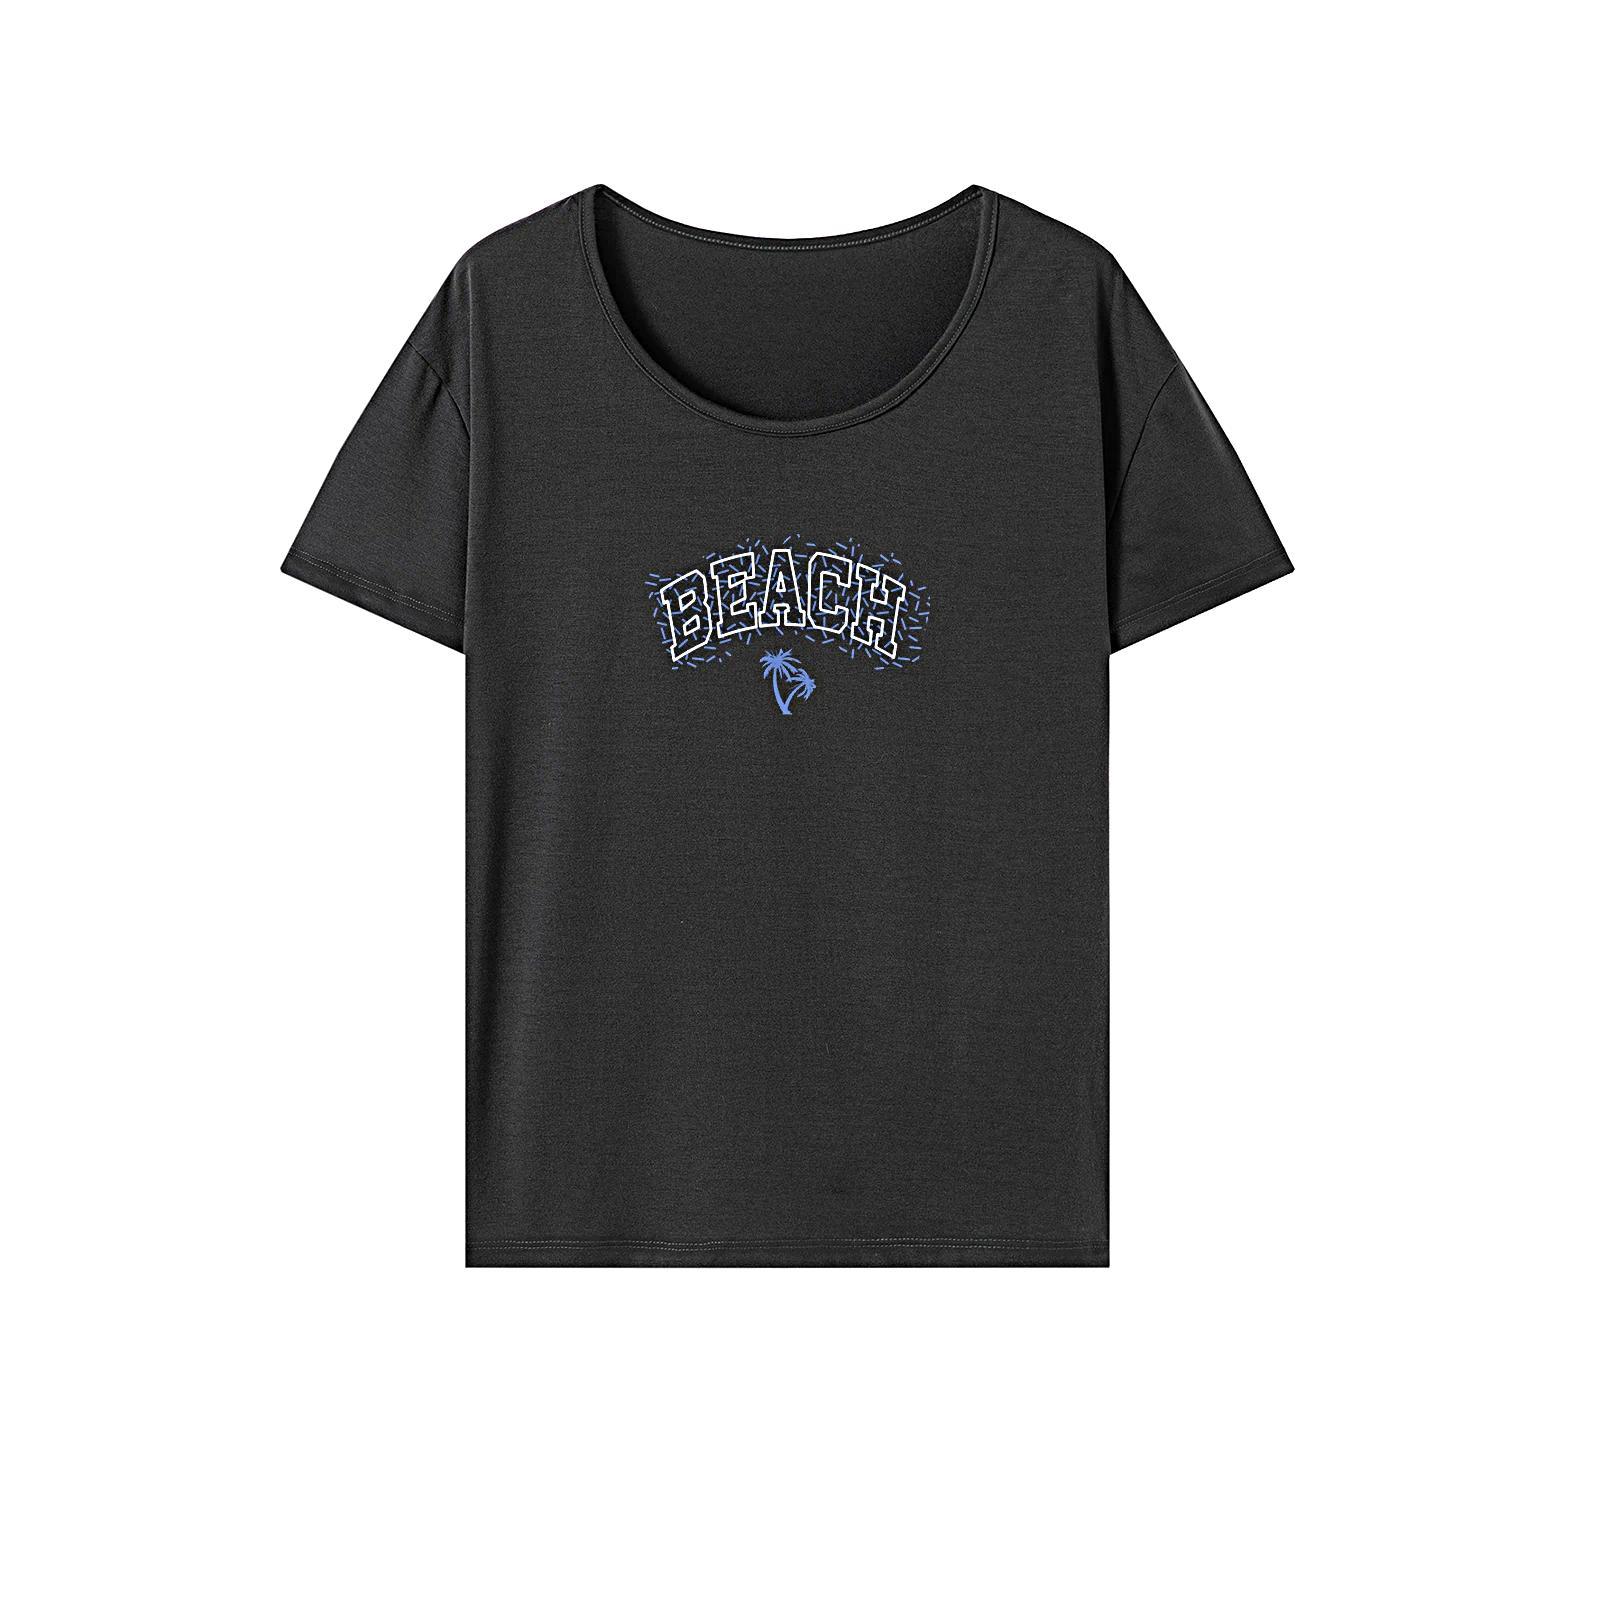 Women's T Shirt Summer Fashion Short Sleeve Top for Camping Walking Shopping S